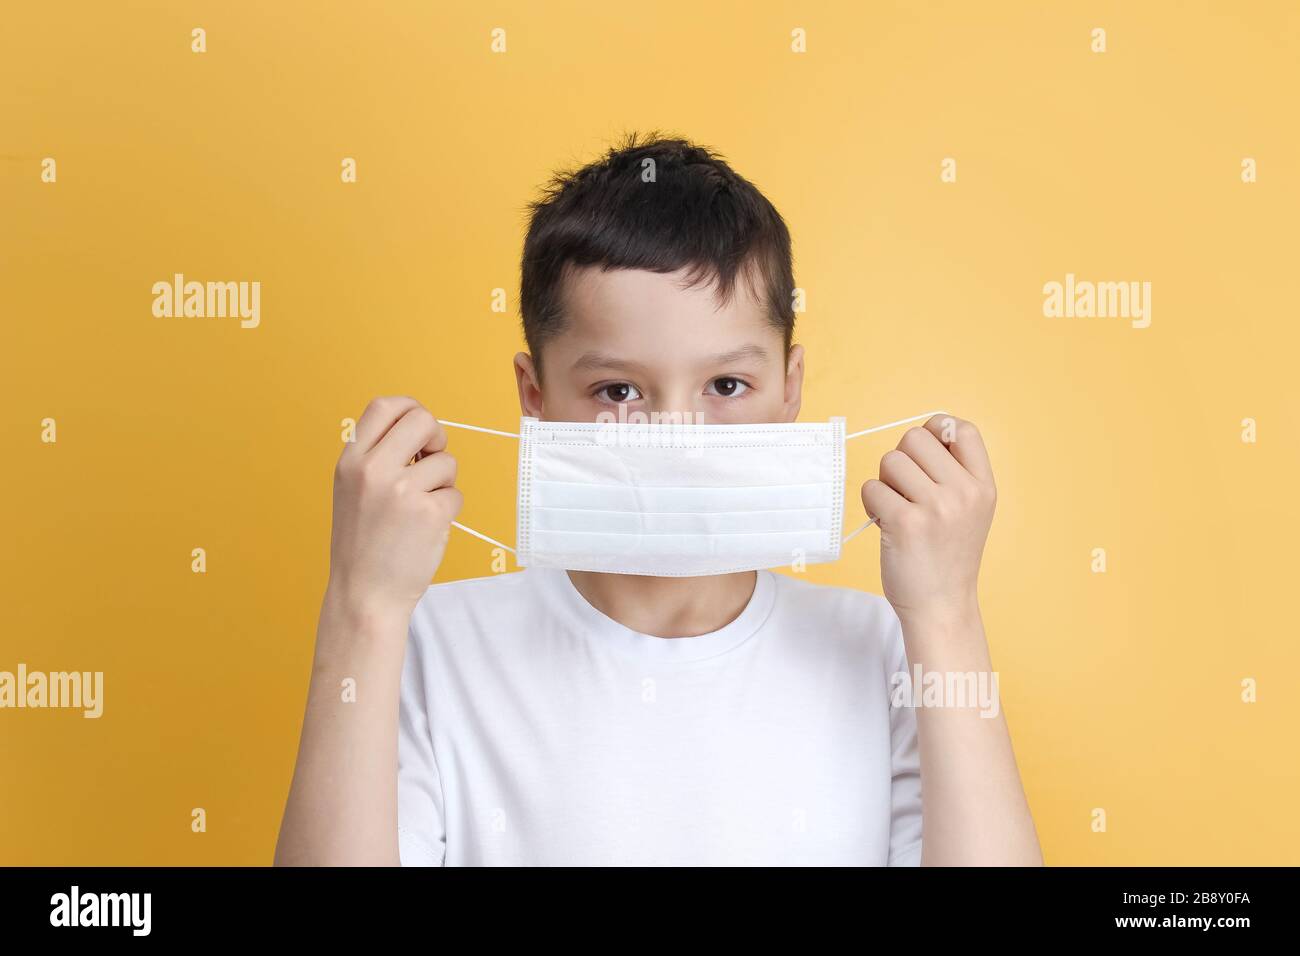 Niño caucásico con pelo oscuro en una camiseta blanca sosteniendo, poniendo una máscara médica sobre un fondo amarillo. Concepto de protección frente a infecciones virales Foto de stock